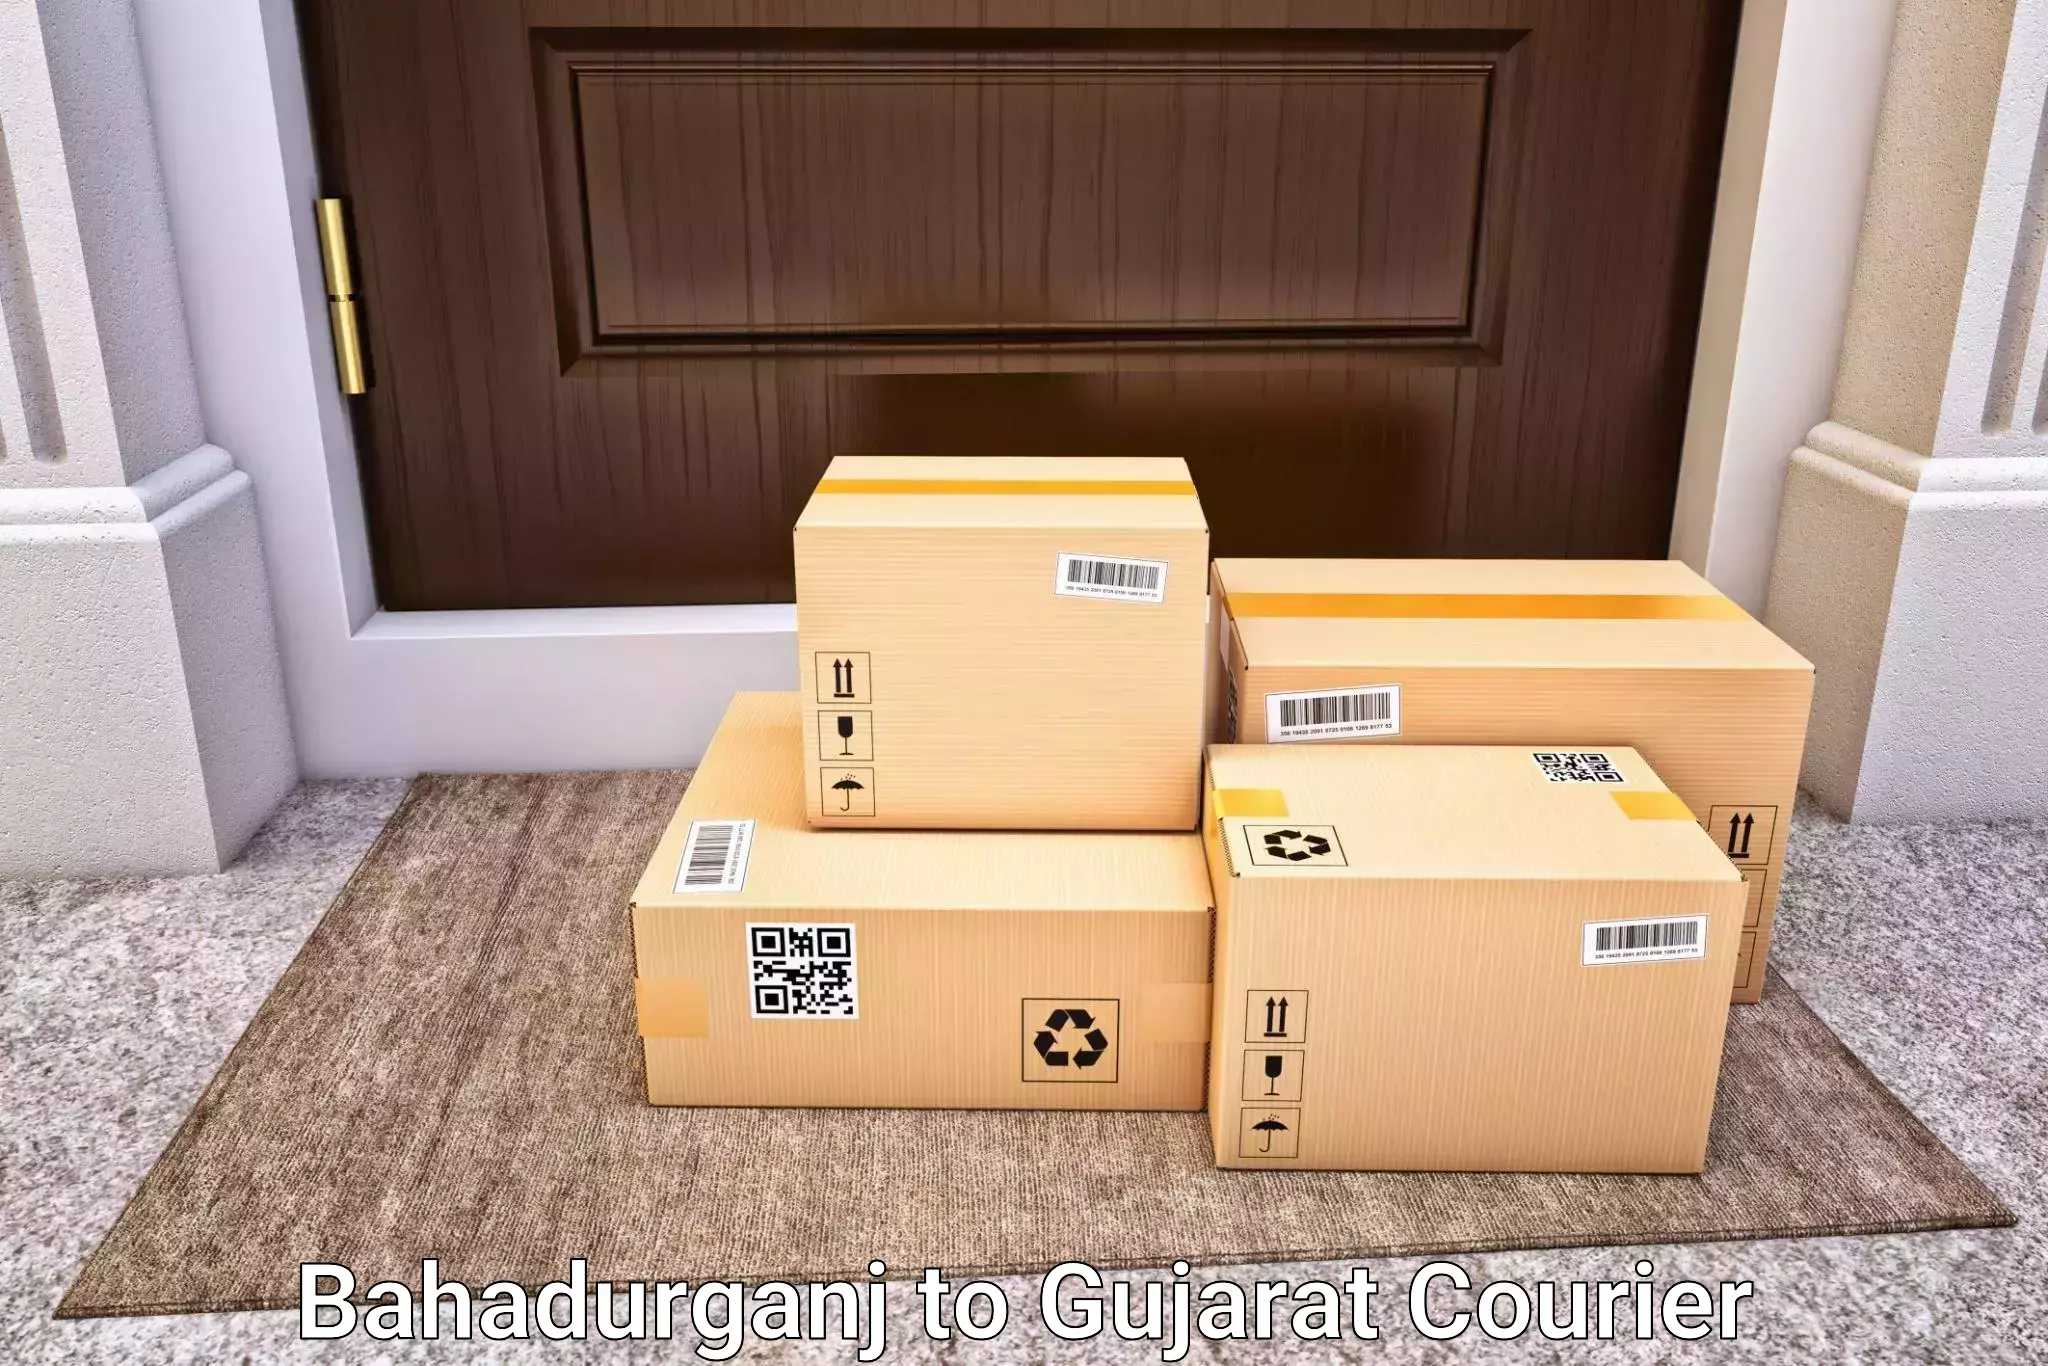 Luggage delivery optimization Bahadurganj to Bhabhar